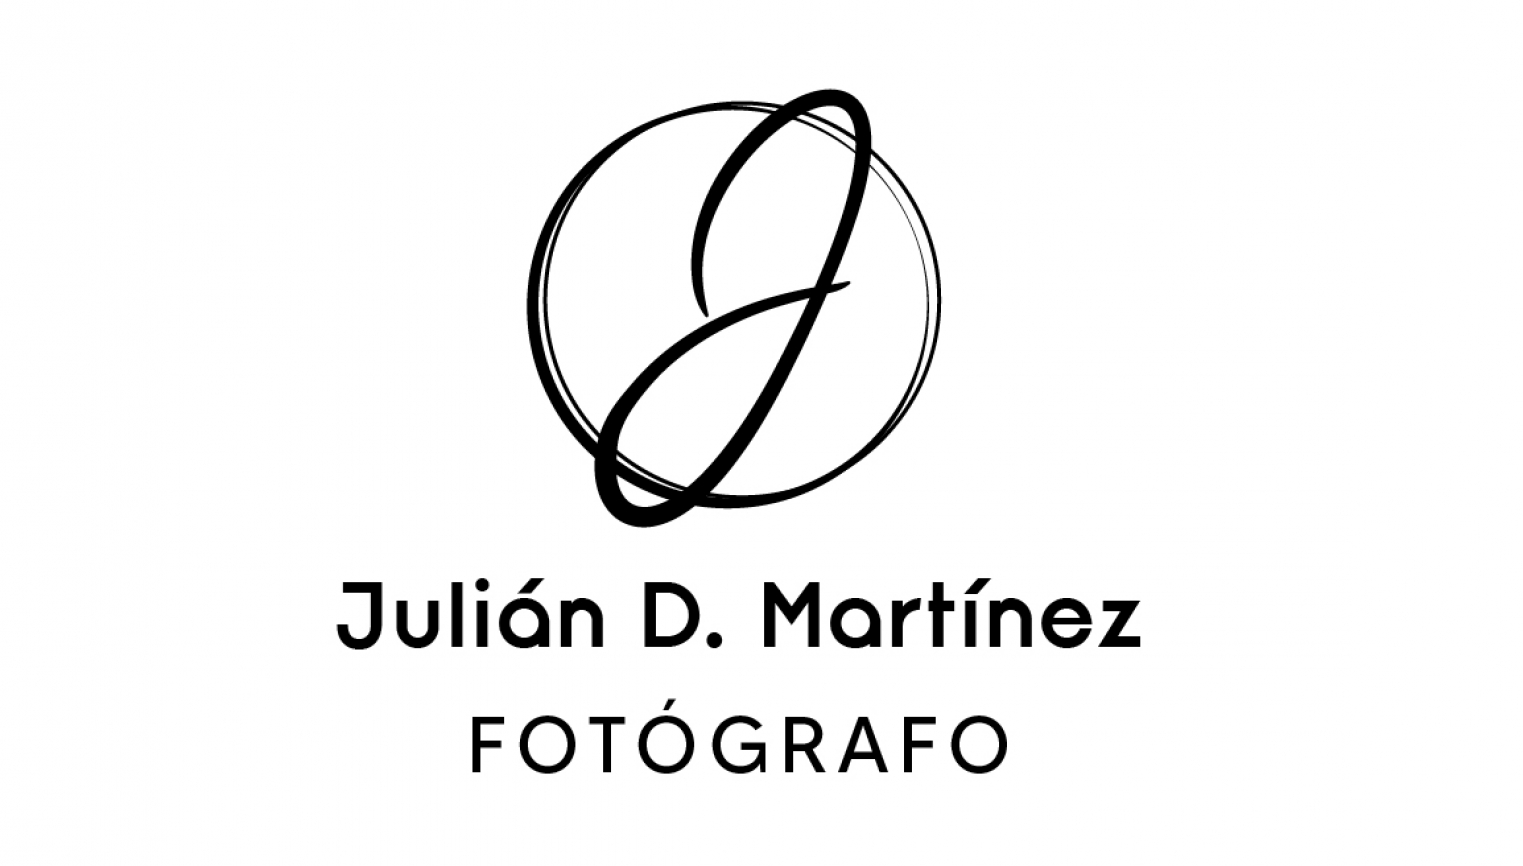 Julián D. Martínez FOTÓGRAFO - foto 1/1